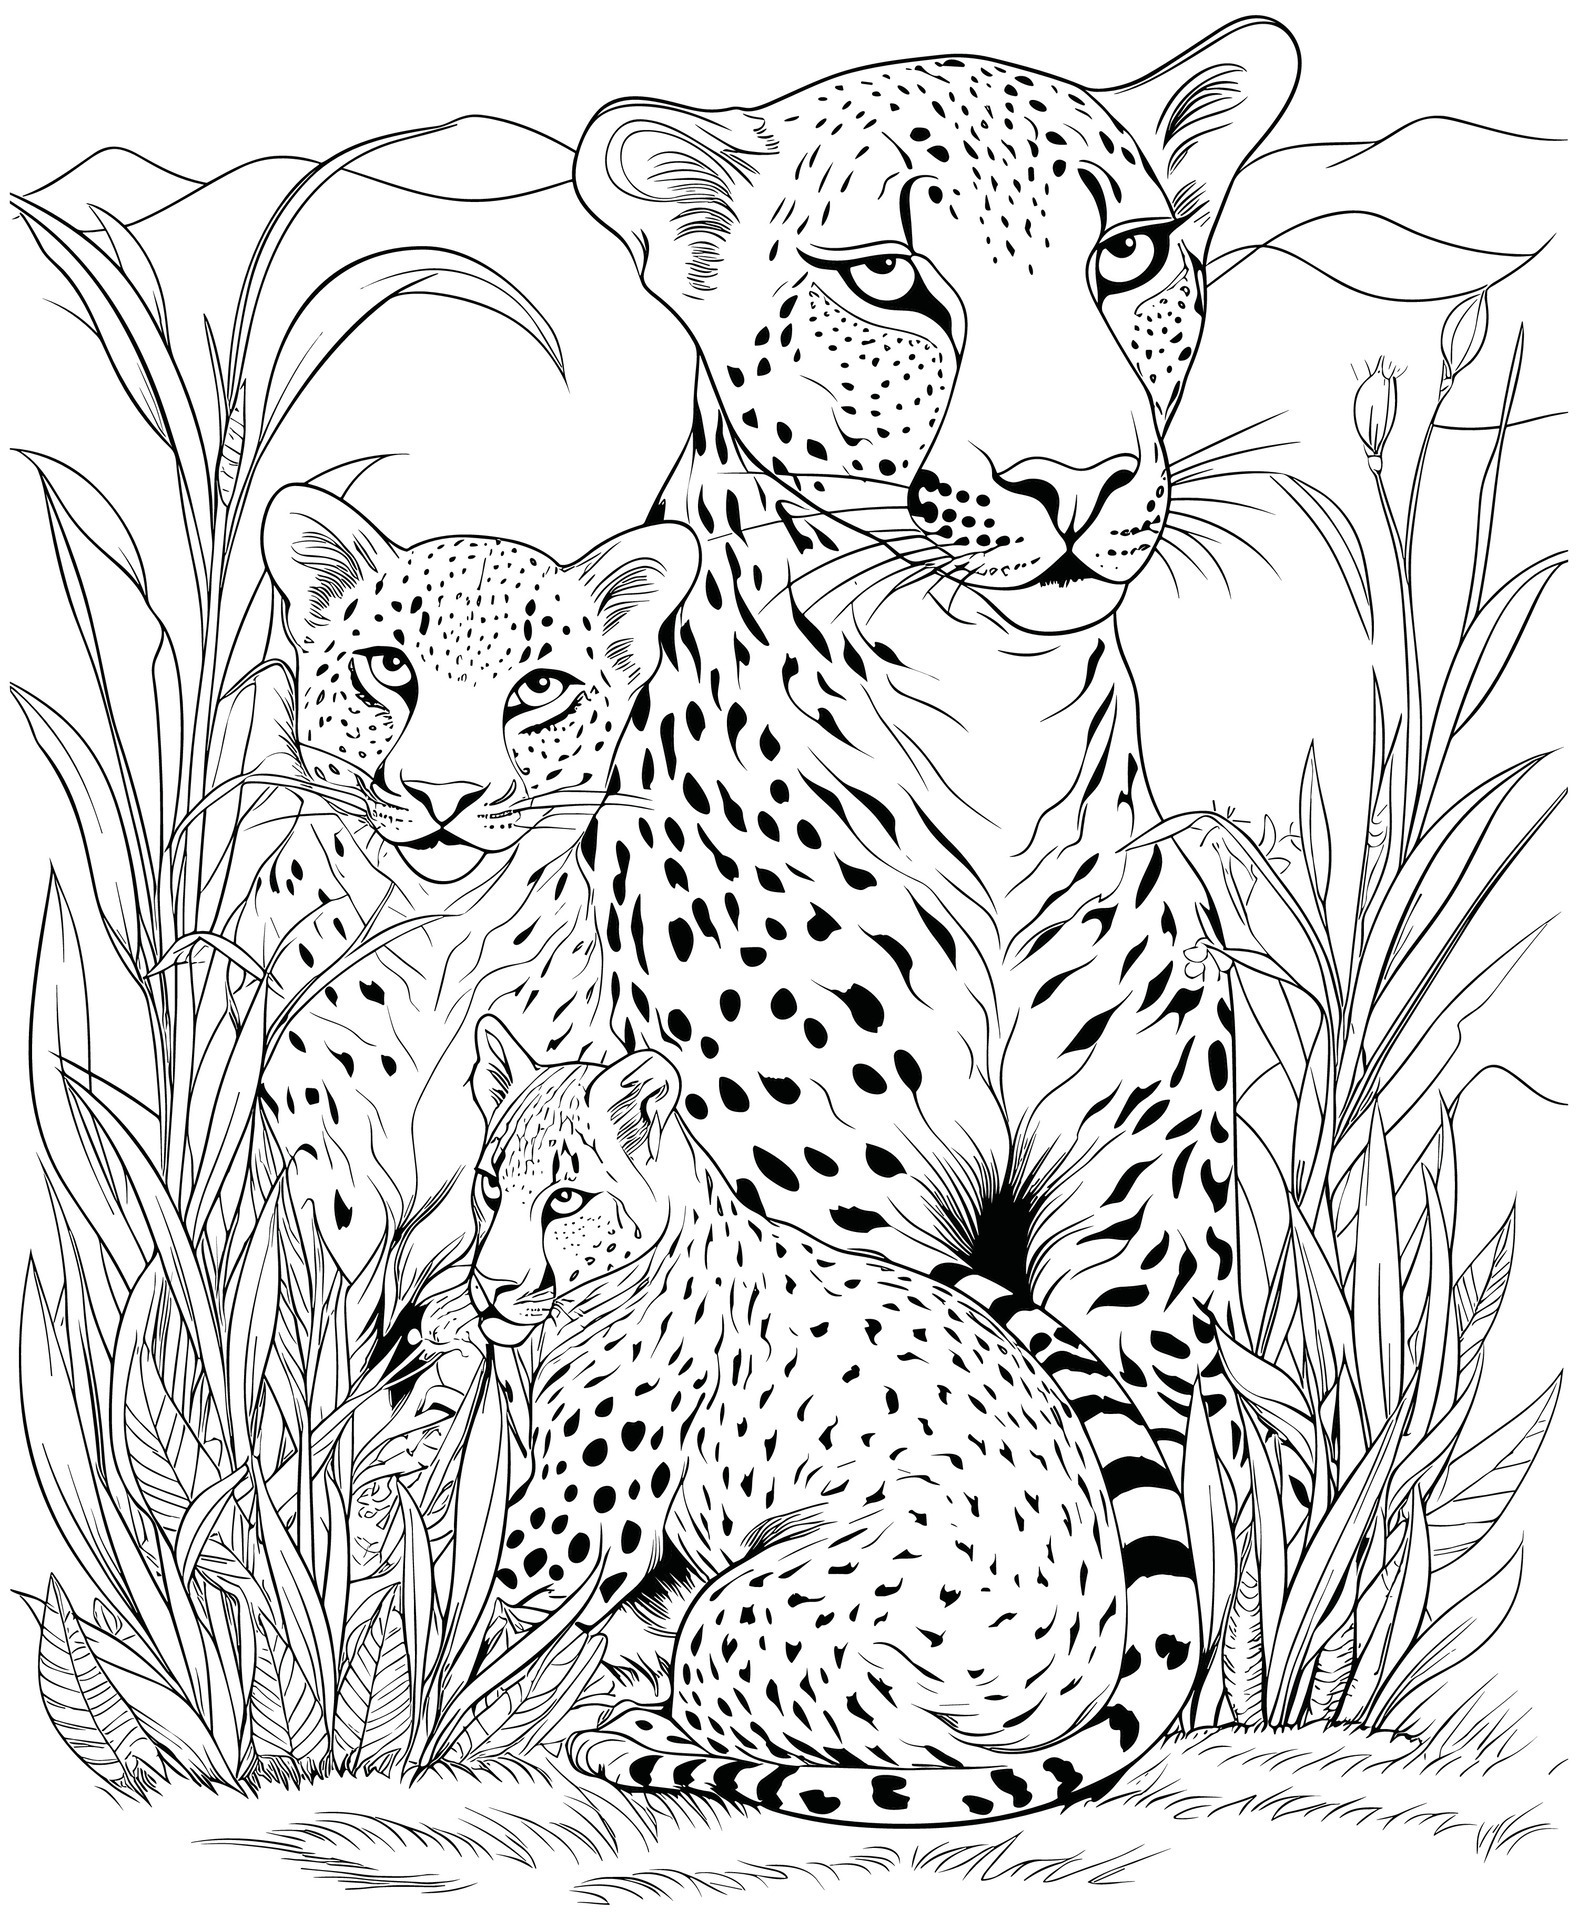 Mother Cheetah and Baby Cheetah Coloring Page 26733049 Vector Art at ...